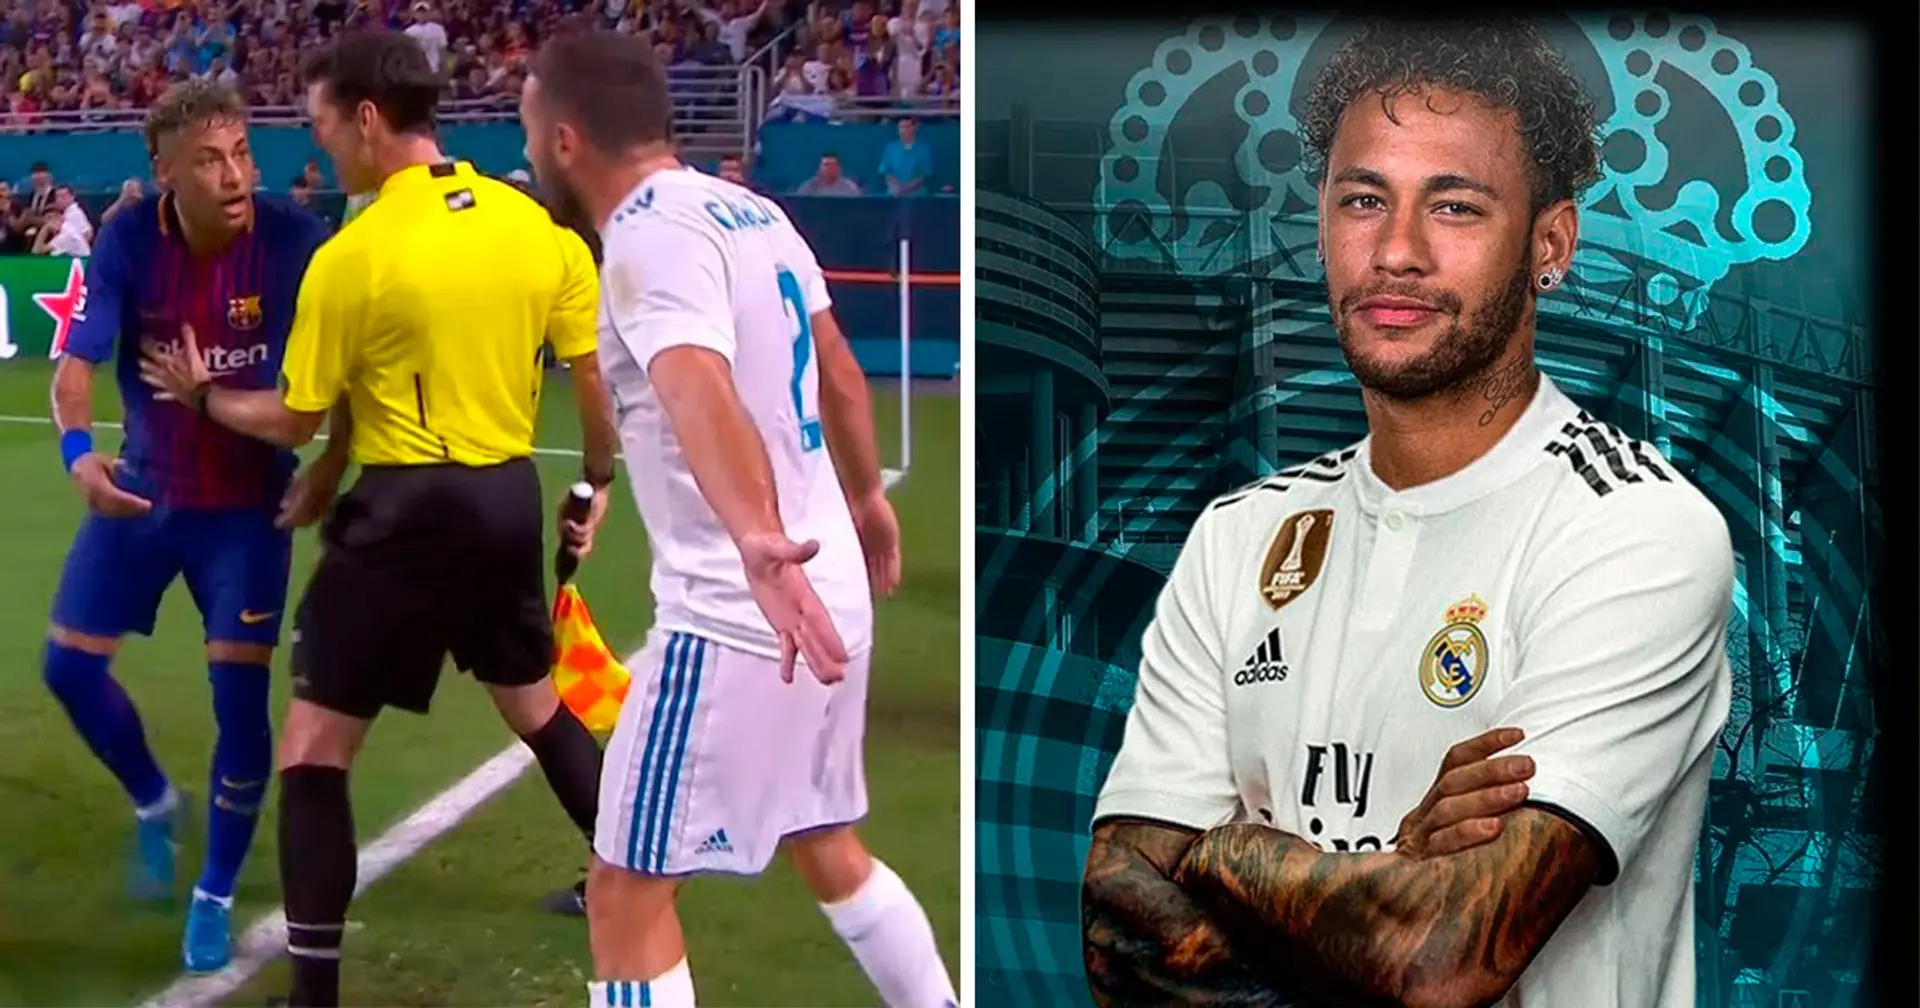 "Hala Madrid": Real-Chefscout enthüllt die Nachricht auf WhatsApp, die Neymar ihm vor seinem Wechsel zu Barca geschickt hat